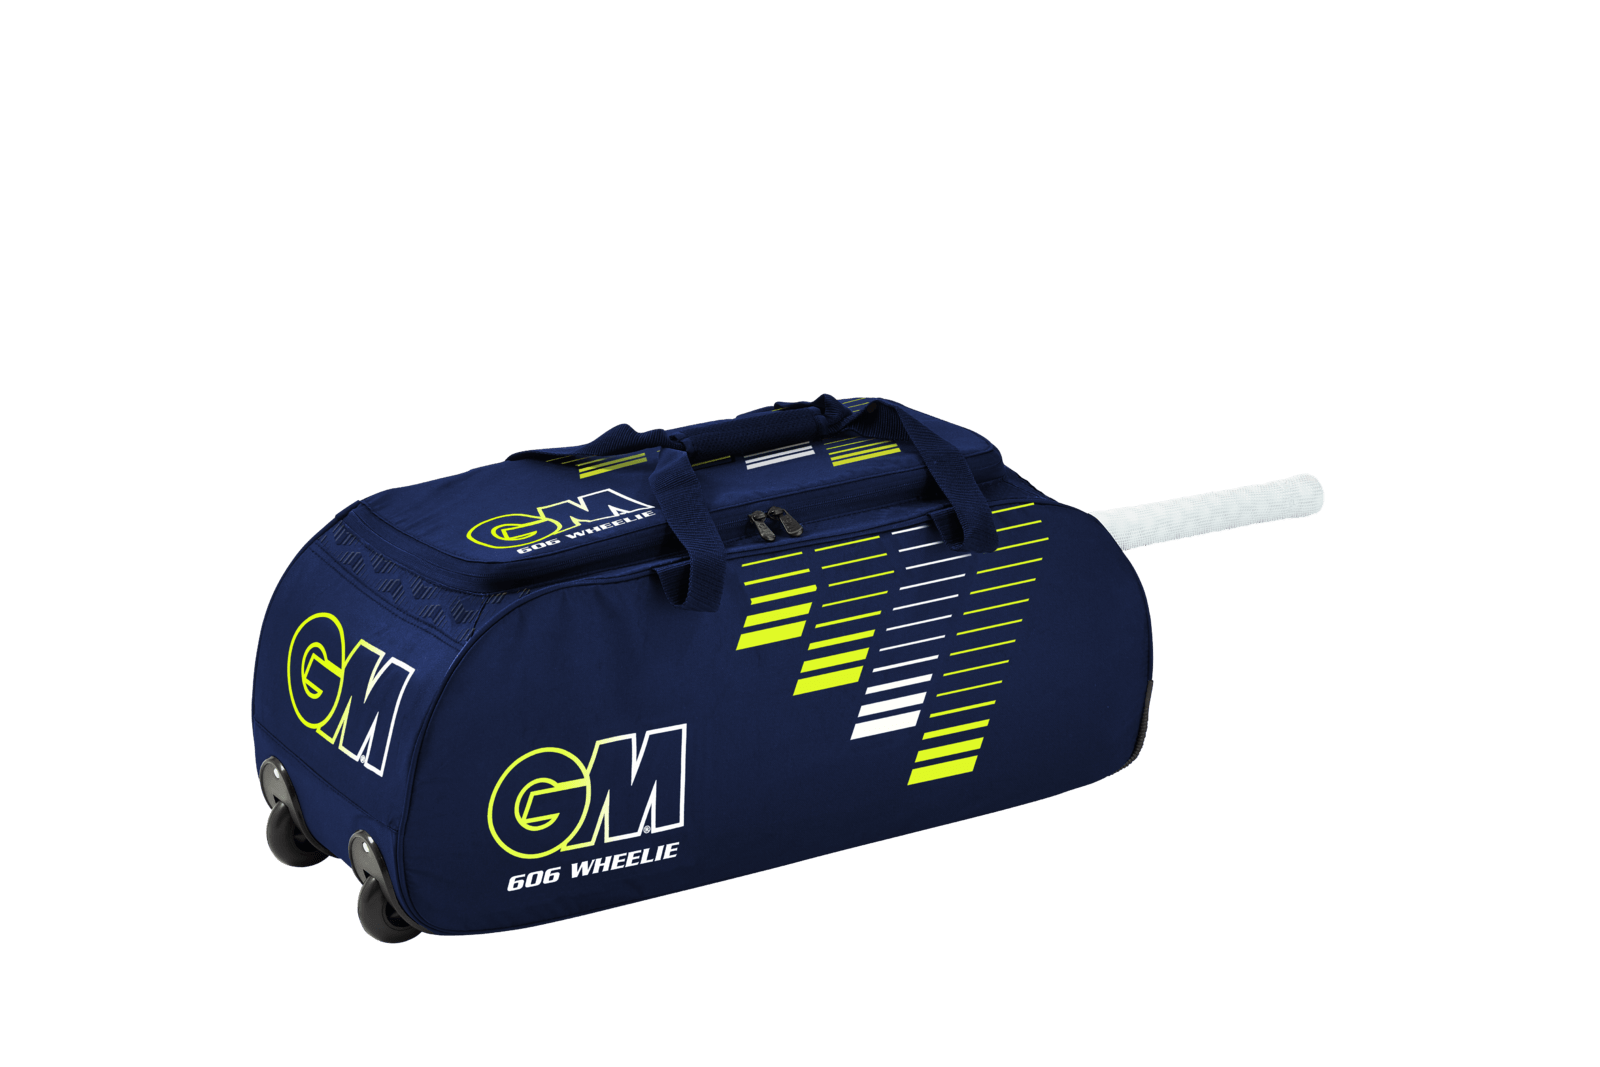 Gunn & Moore Cricket Bags Navy GM 606 Wheelie Cricket Bag